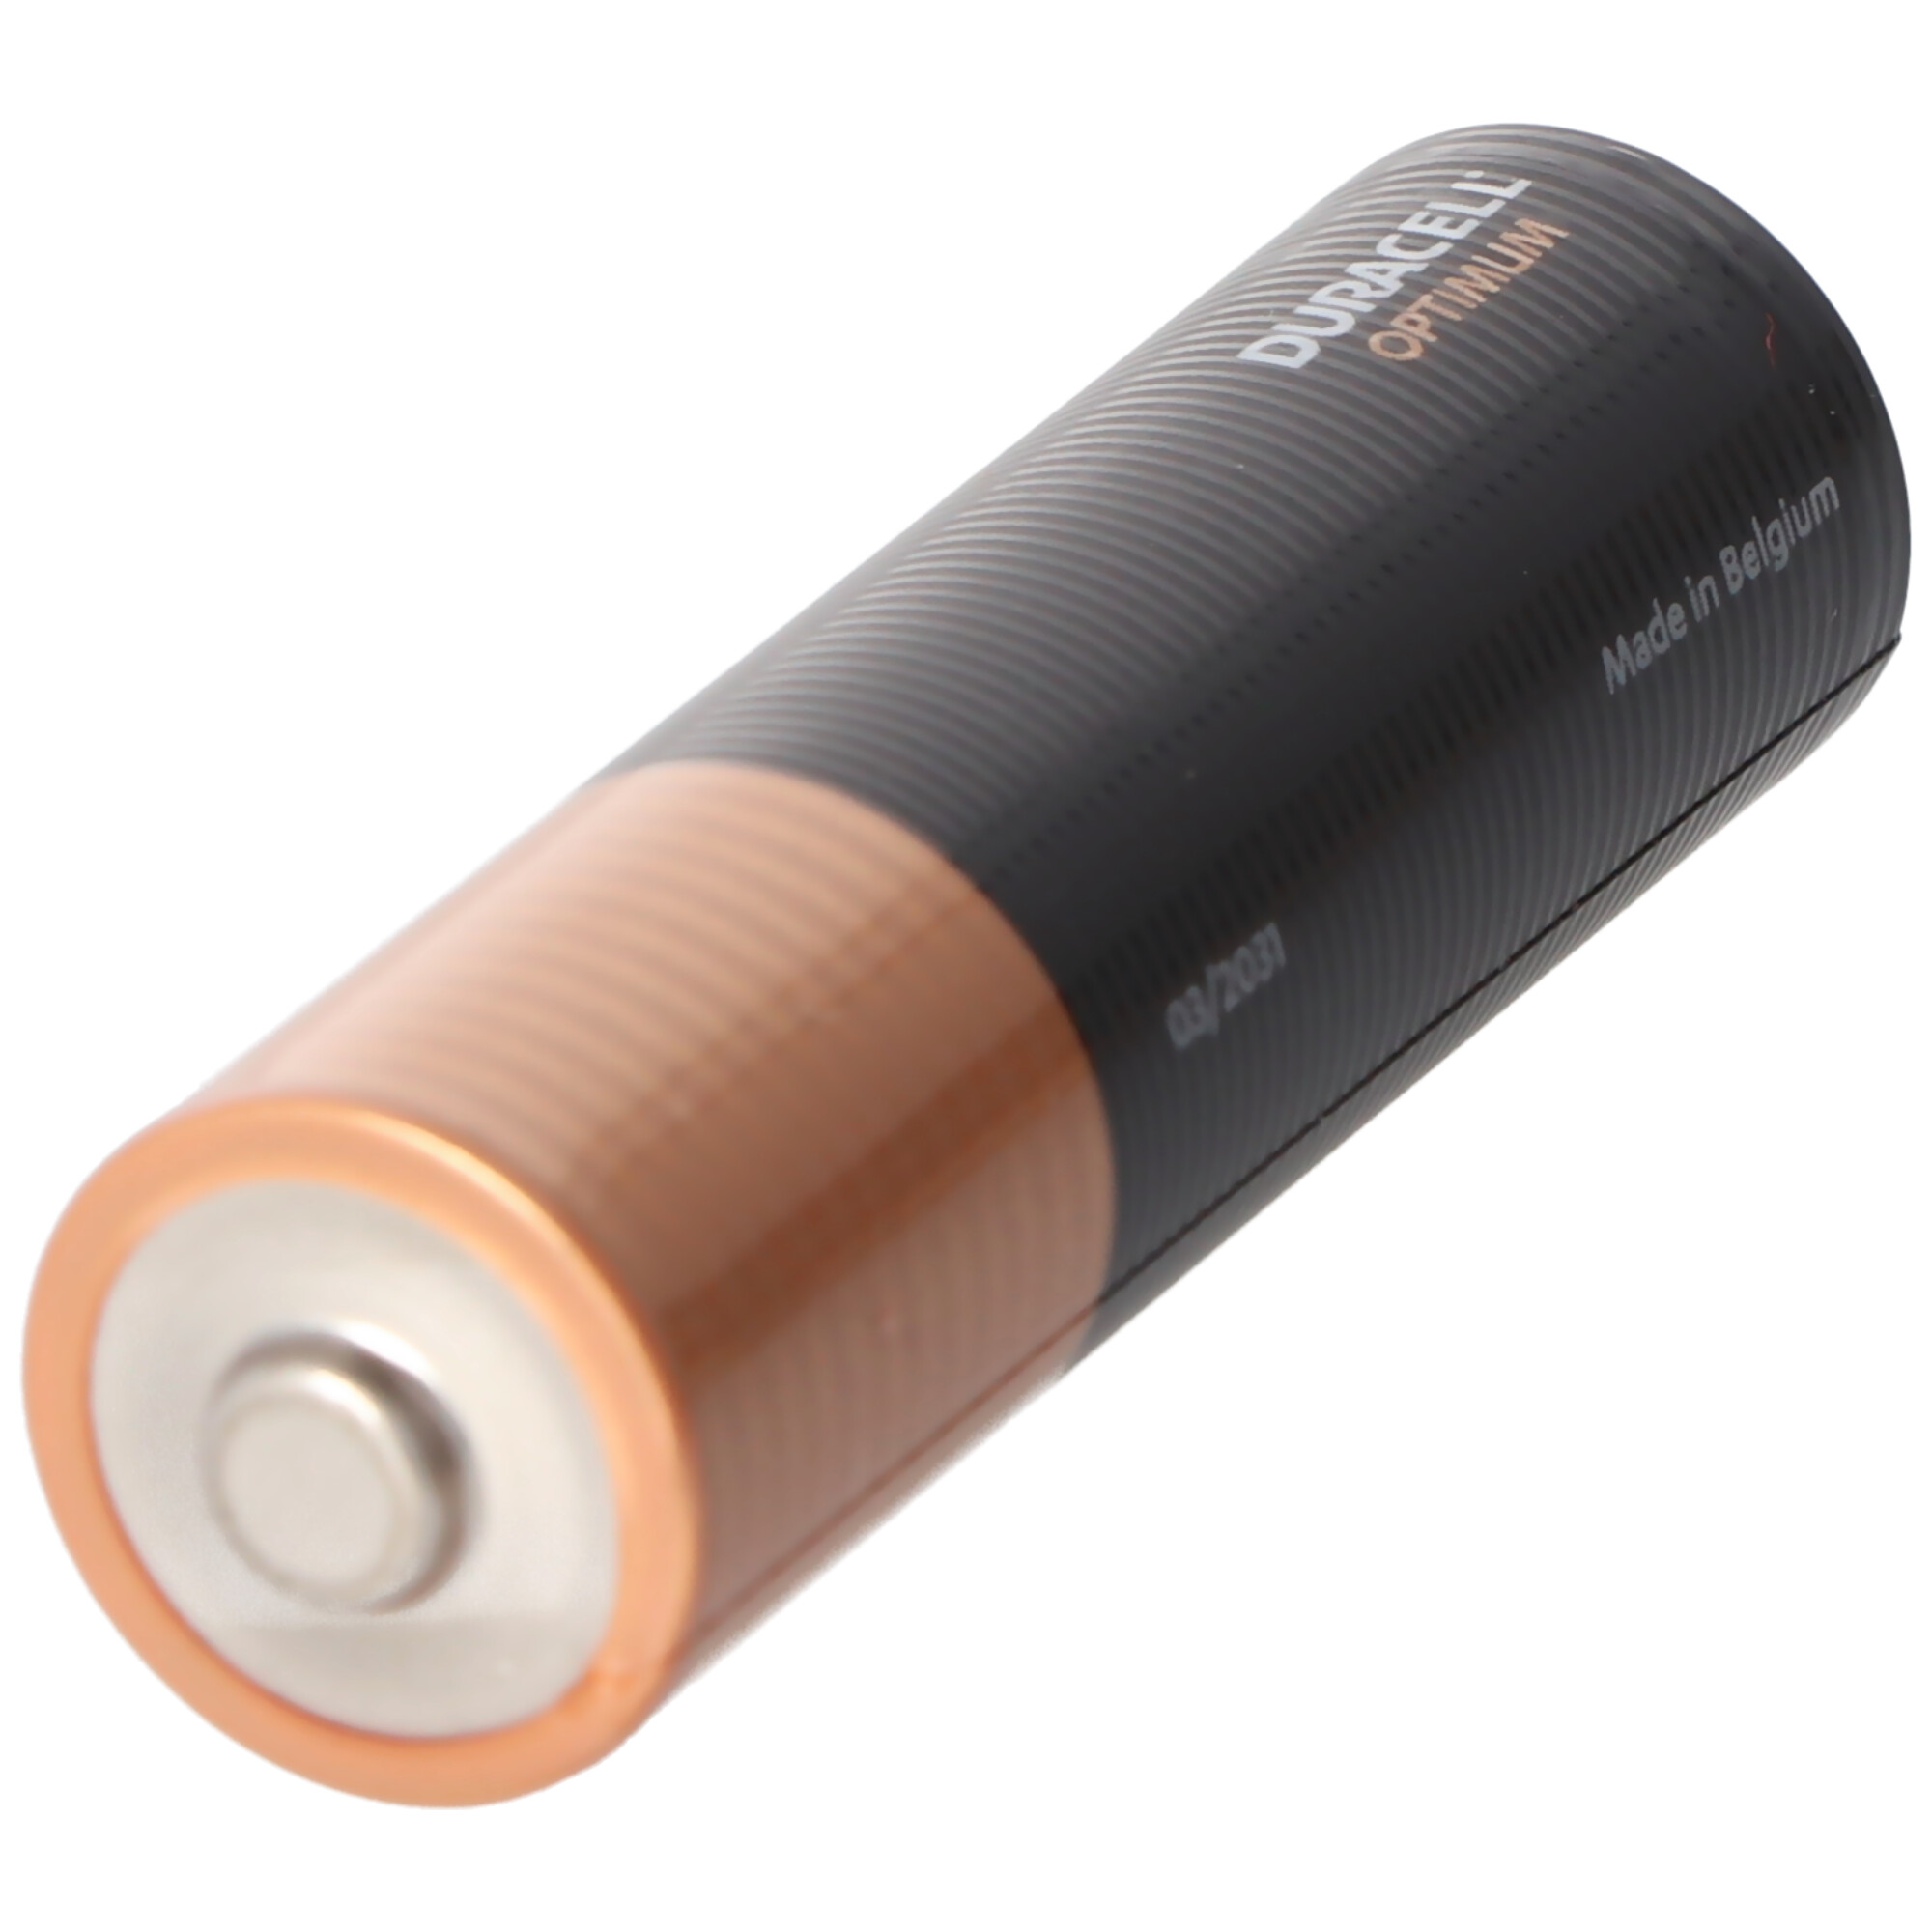 Duracell Optimum AA Mignon Alkaline-Batterien, 1.5V LR6 MX1500, 4er-Pack LR06